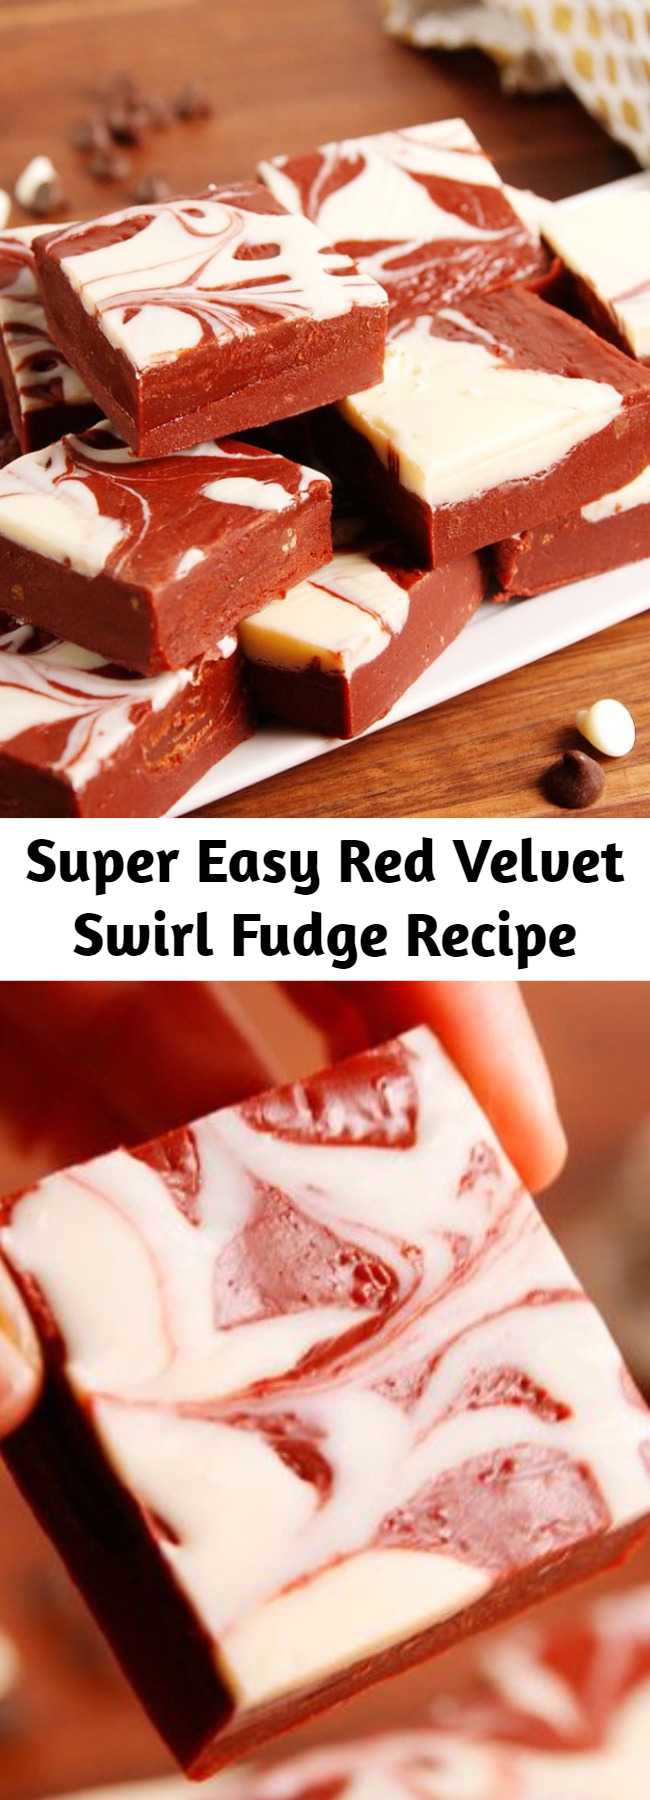 Super Easy Red Velvet Swirl Fudge Recipe - Upgrade your fudge game with this super easy recipe for red velvet swirl fudge. As pretty as it is tasty!